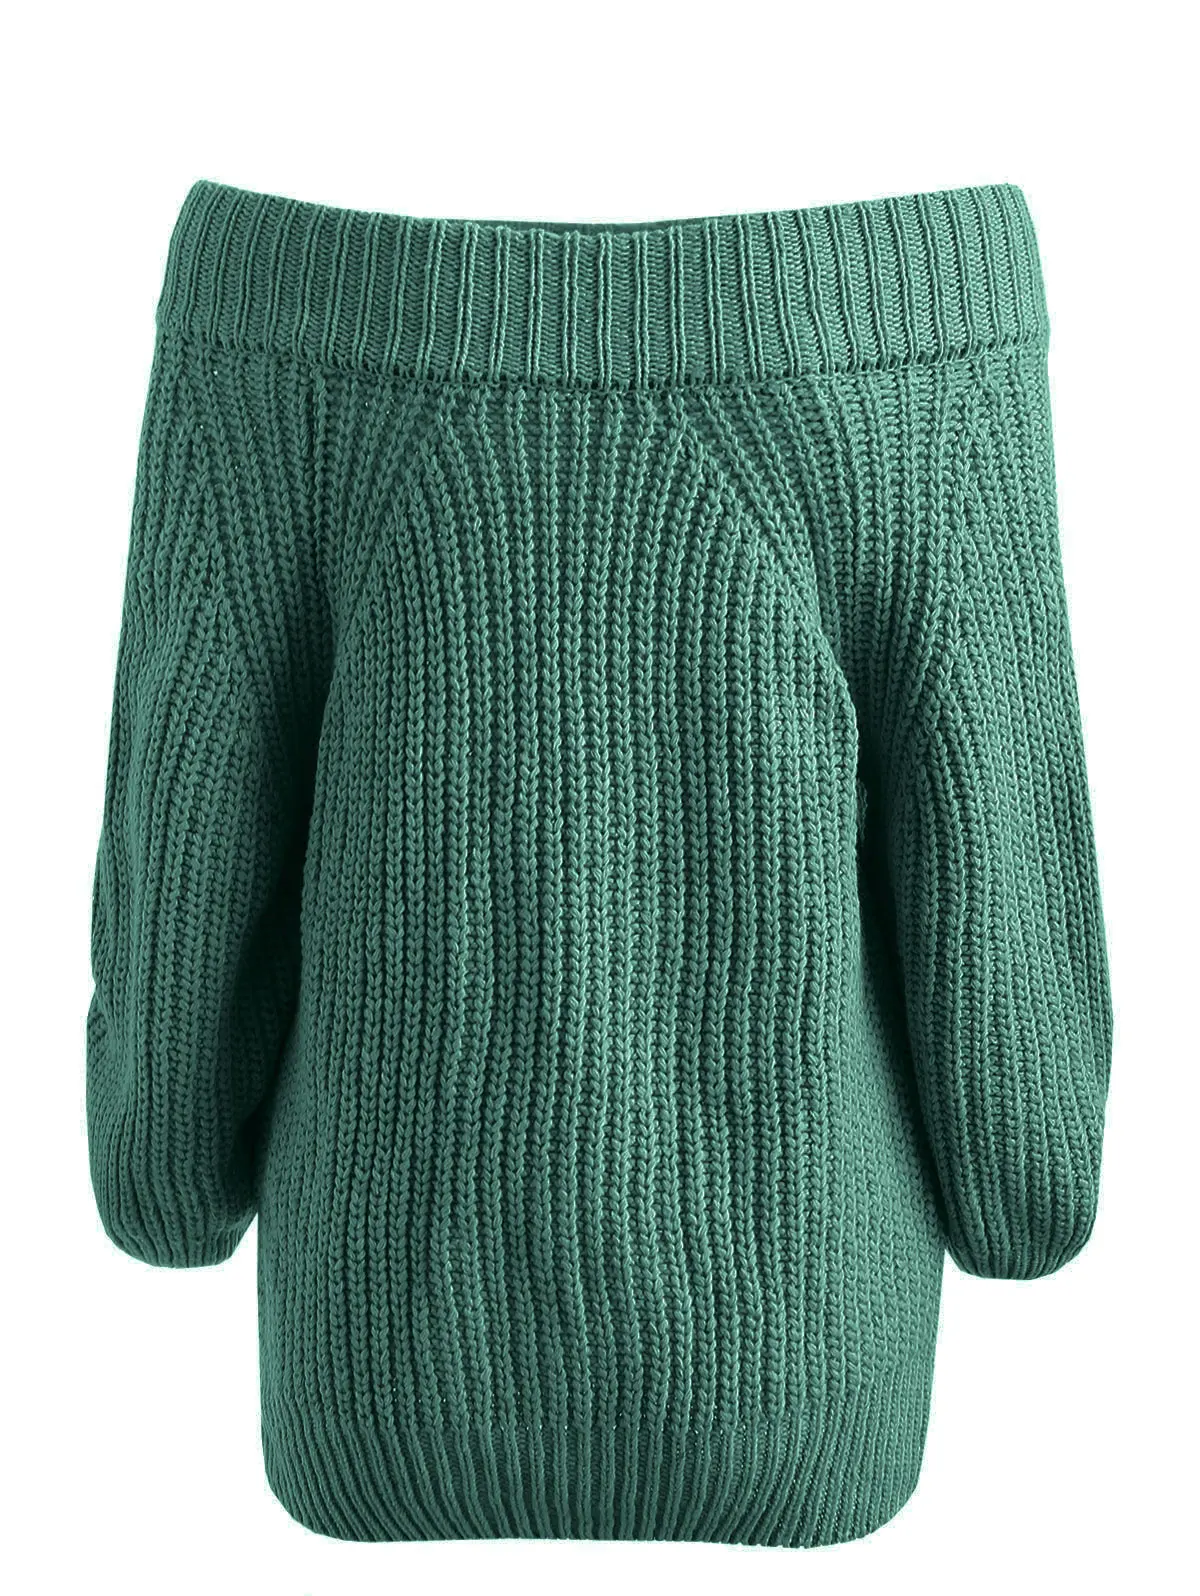 ROSEGAL простой женский свитер с открытыми плечами, рукав реглан, повседневные однотонные свитера, сексуальная женская одежда, пуловеры, Осень-зима